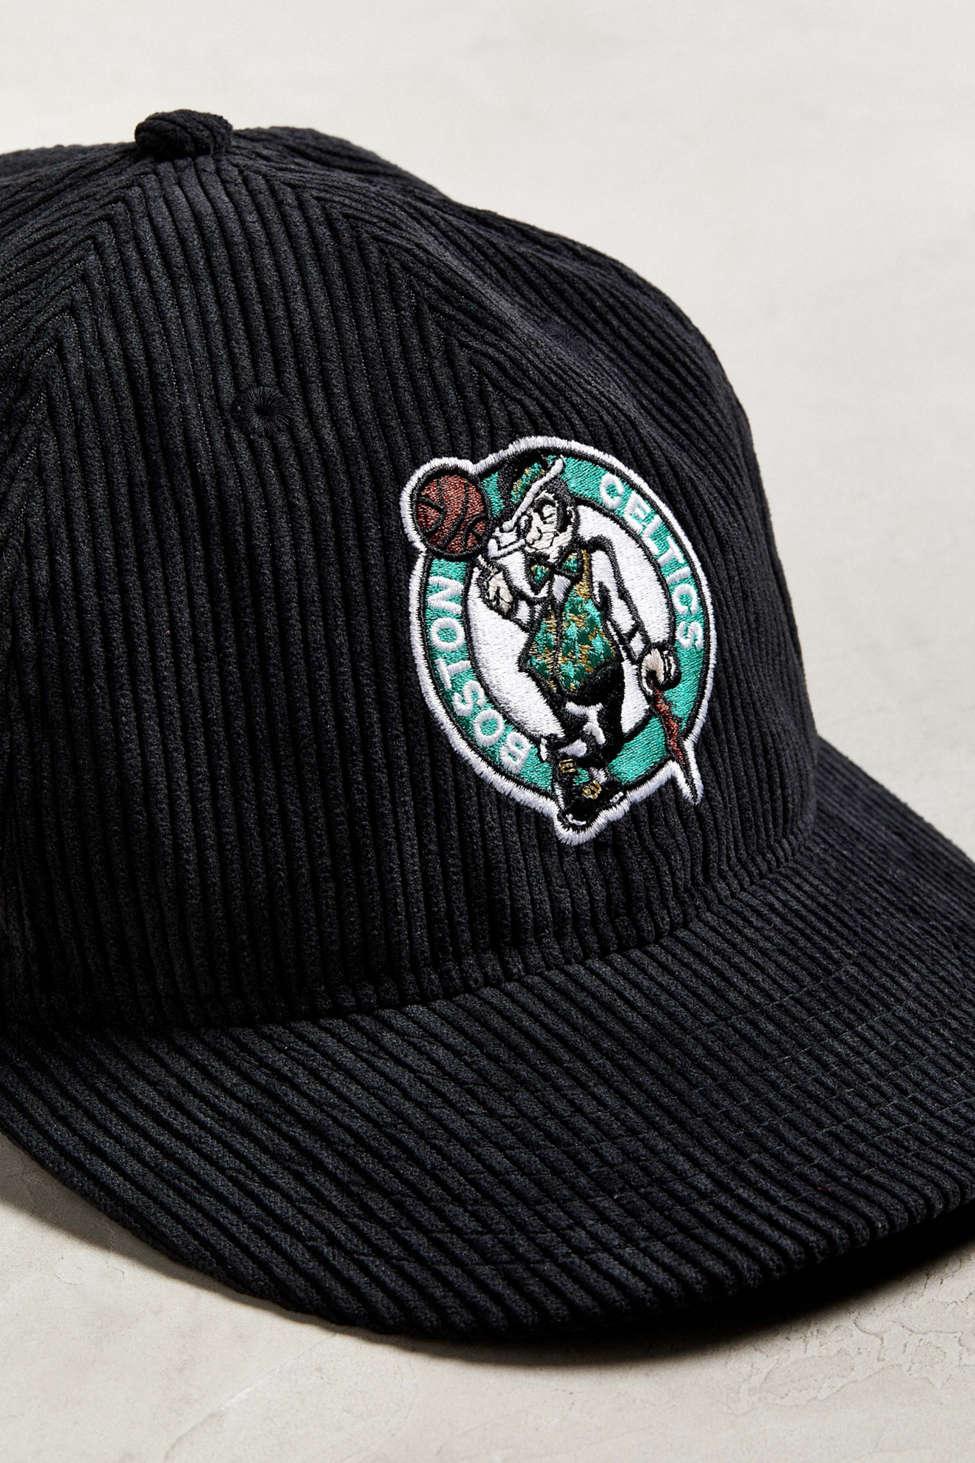 Vintage NBA Boston Celtics Corduroy Snapback Hat Rare Korea